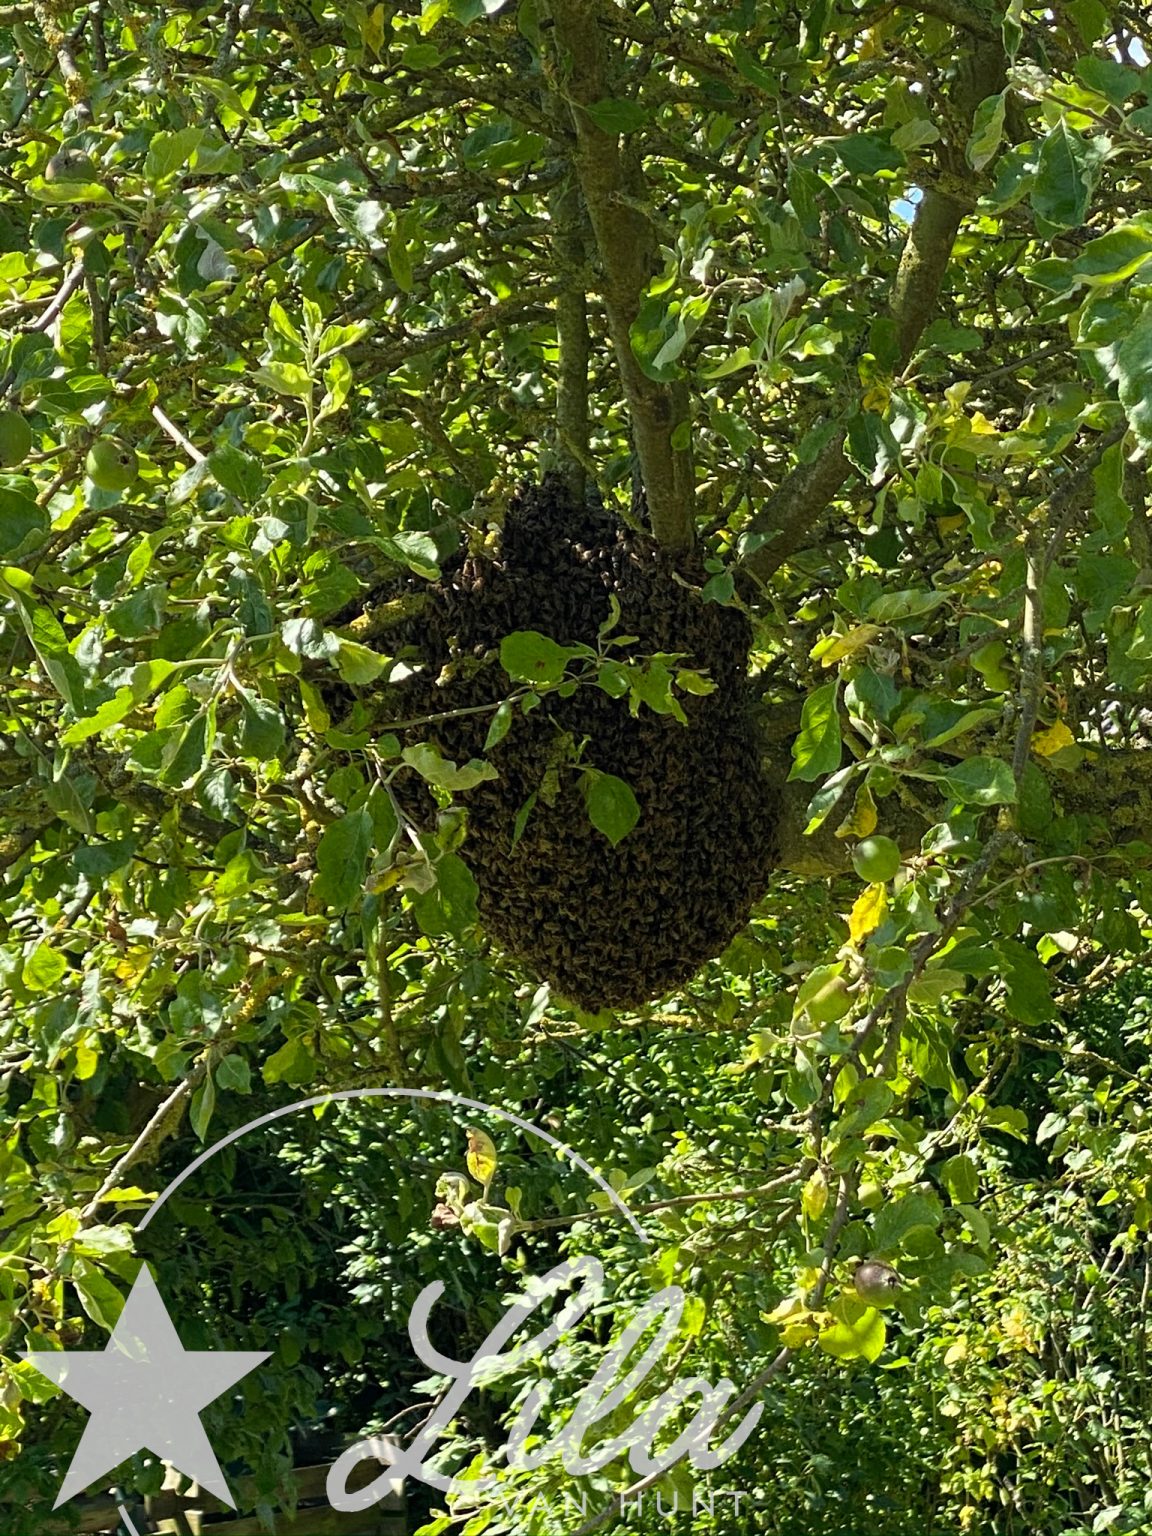 Bienenvolk im Garten auf Lila-van-Hunt.de - meinem Bücher- und